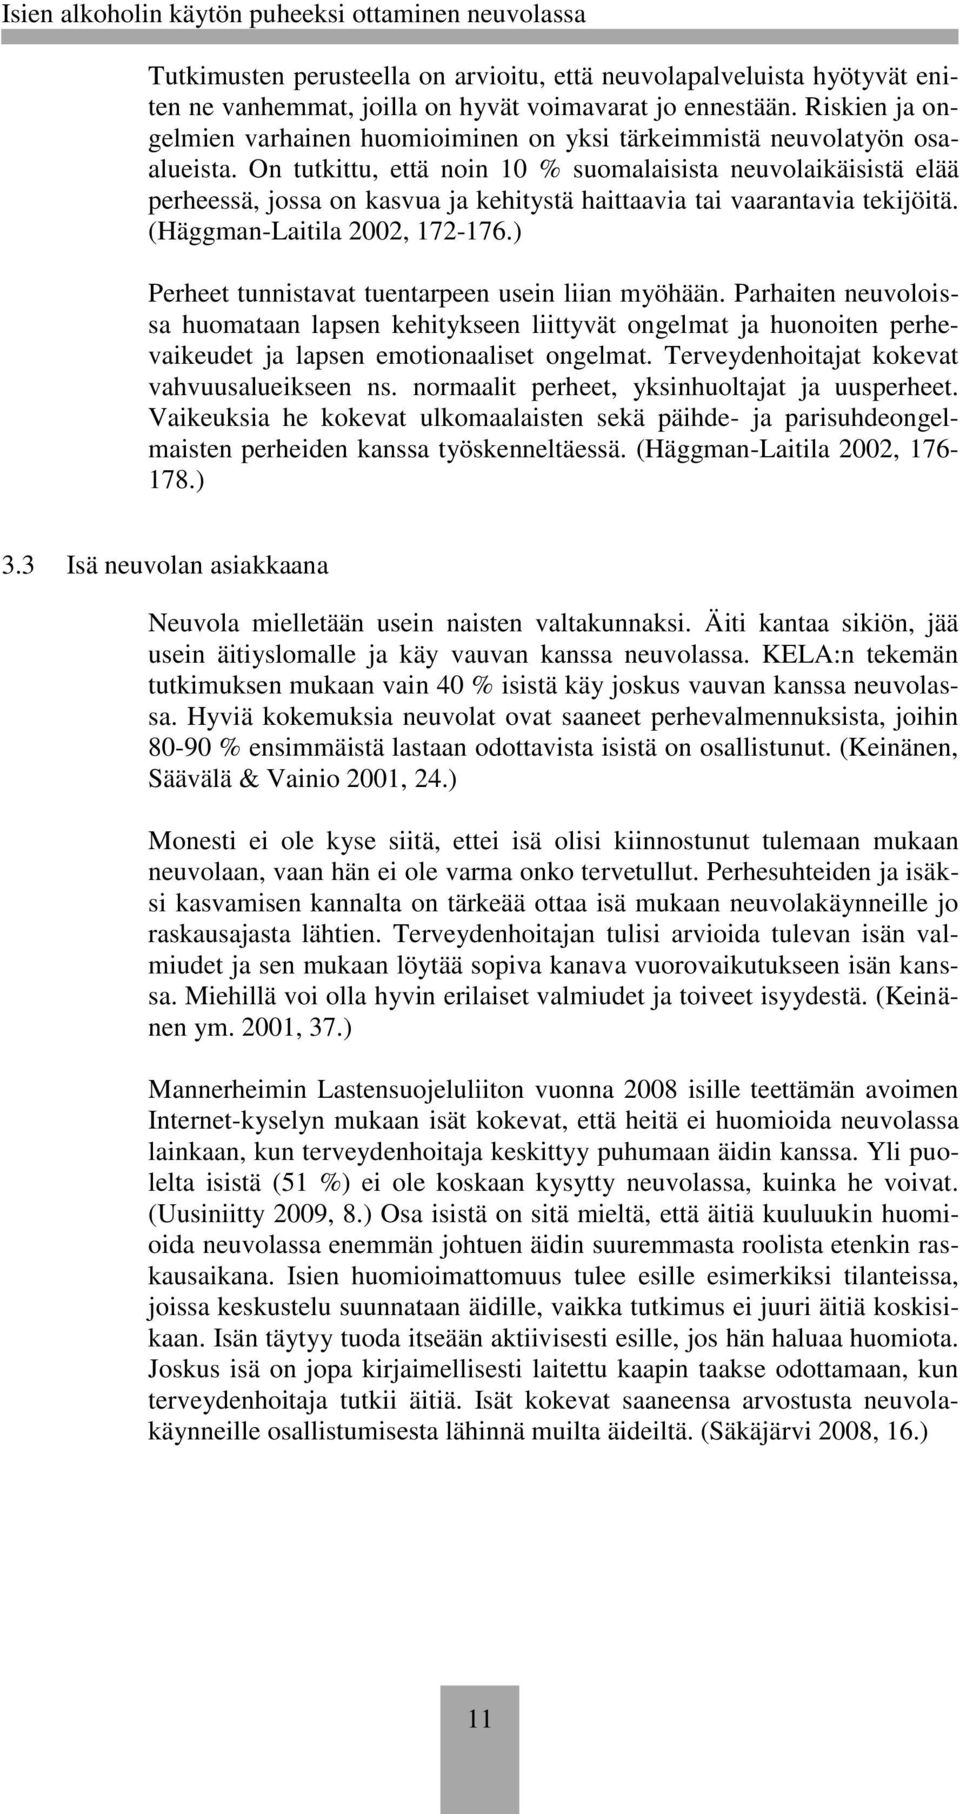 On tutkittu, että noin 10 % suomalaisista neuvolaikäisistä elää perheessä, jossa on kasvua ja kehitystä haittaavia tai vaarantavia tekijöitä. (Häggman-Laitila 2002, 172-176.